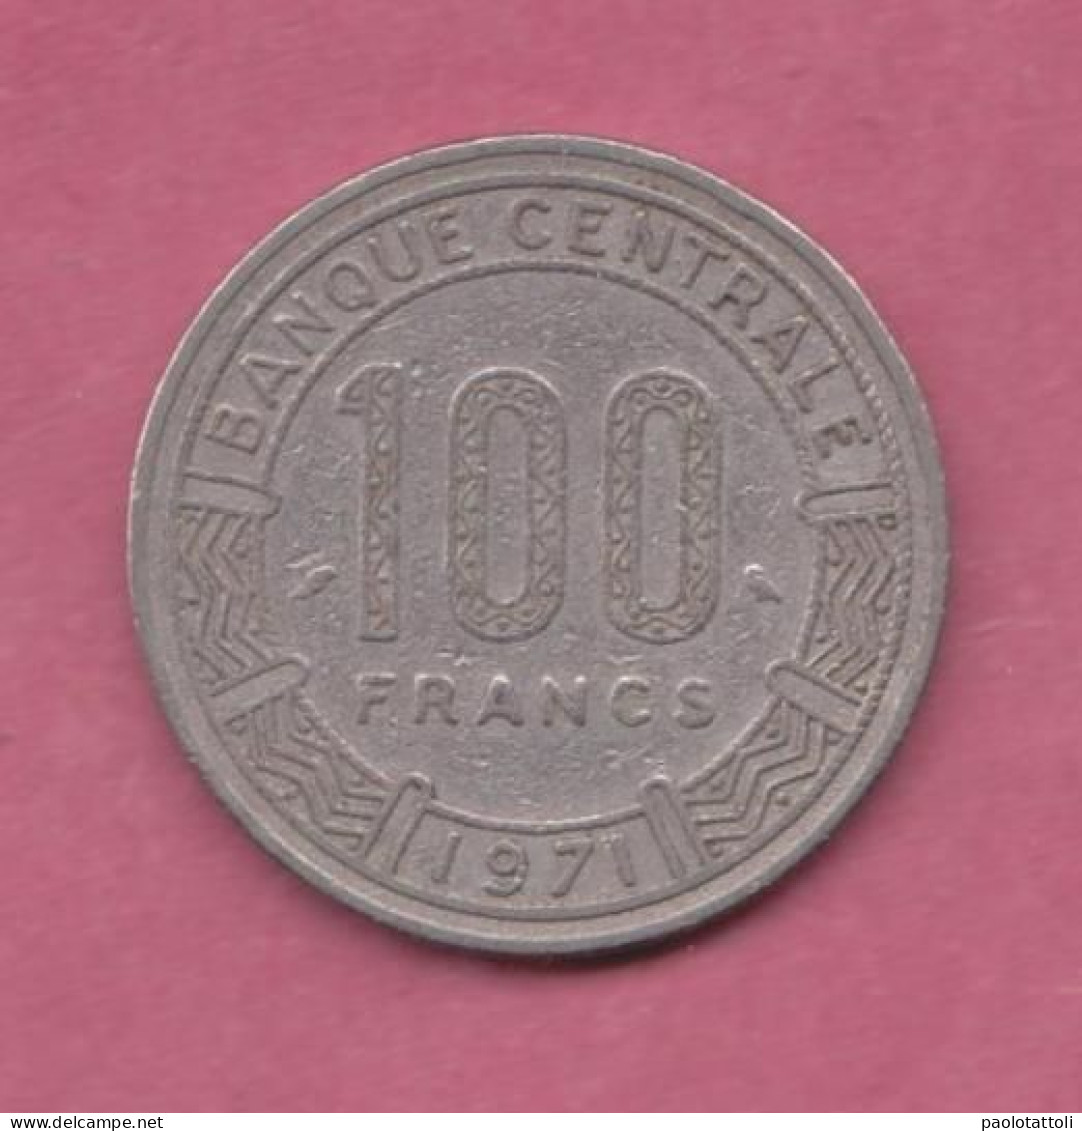 Republique Populaire Du Congo, 1971- 100 Francs- Nickel- Obverse Three Giant Eland. Reverse Denomination - Congo (República Democrática 1998)